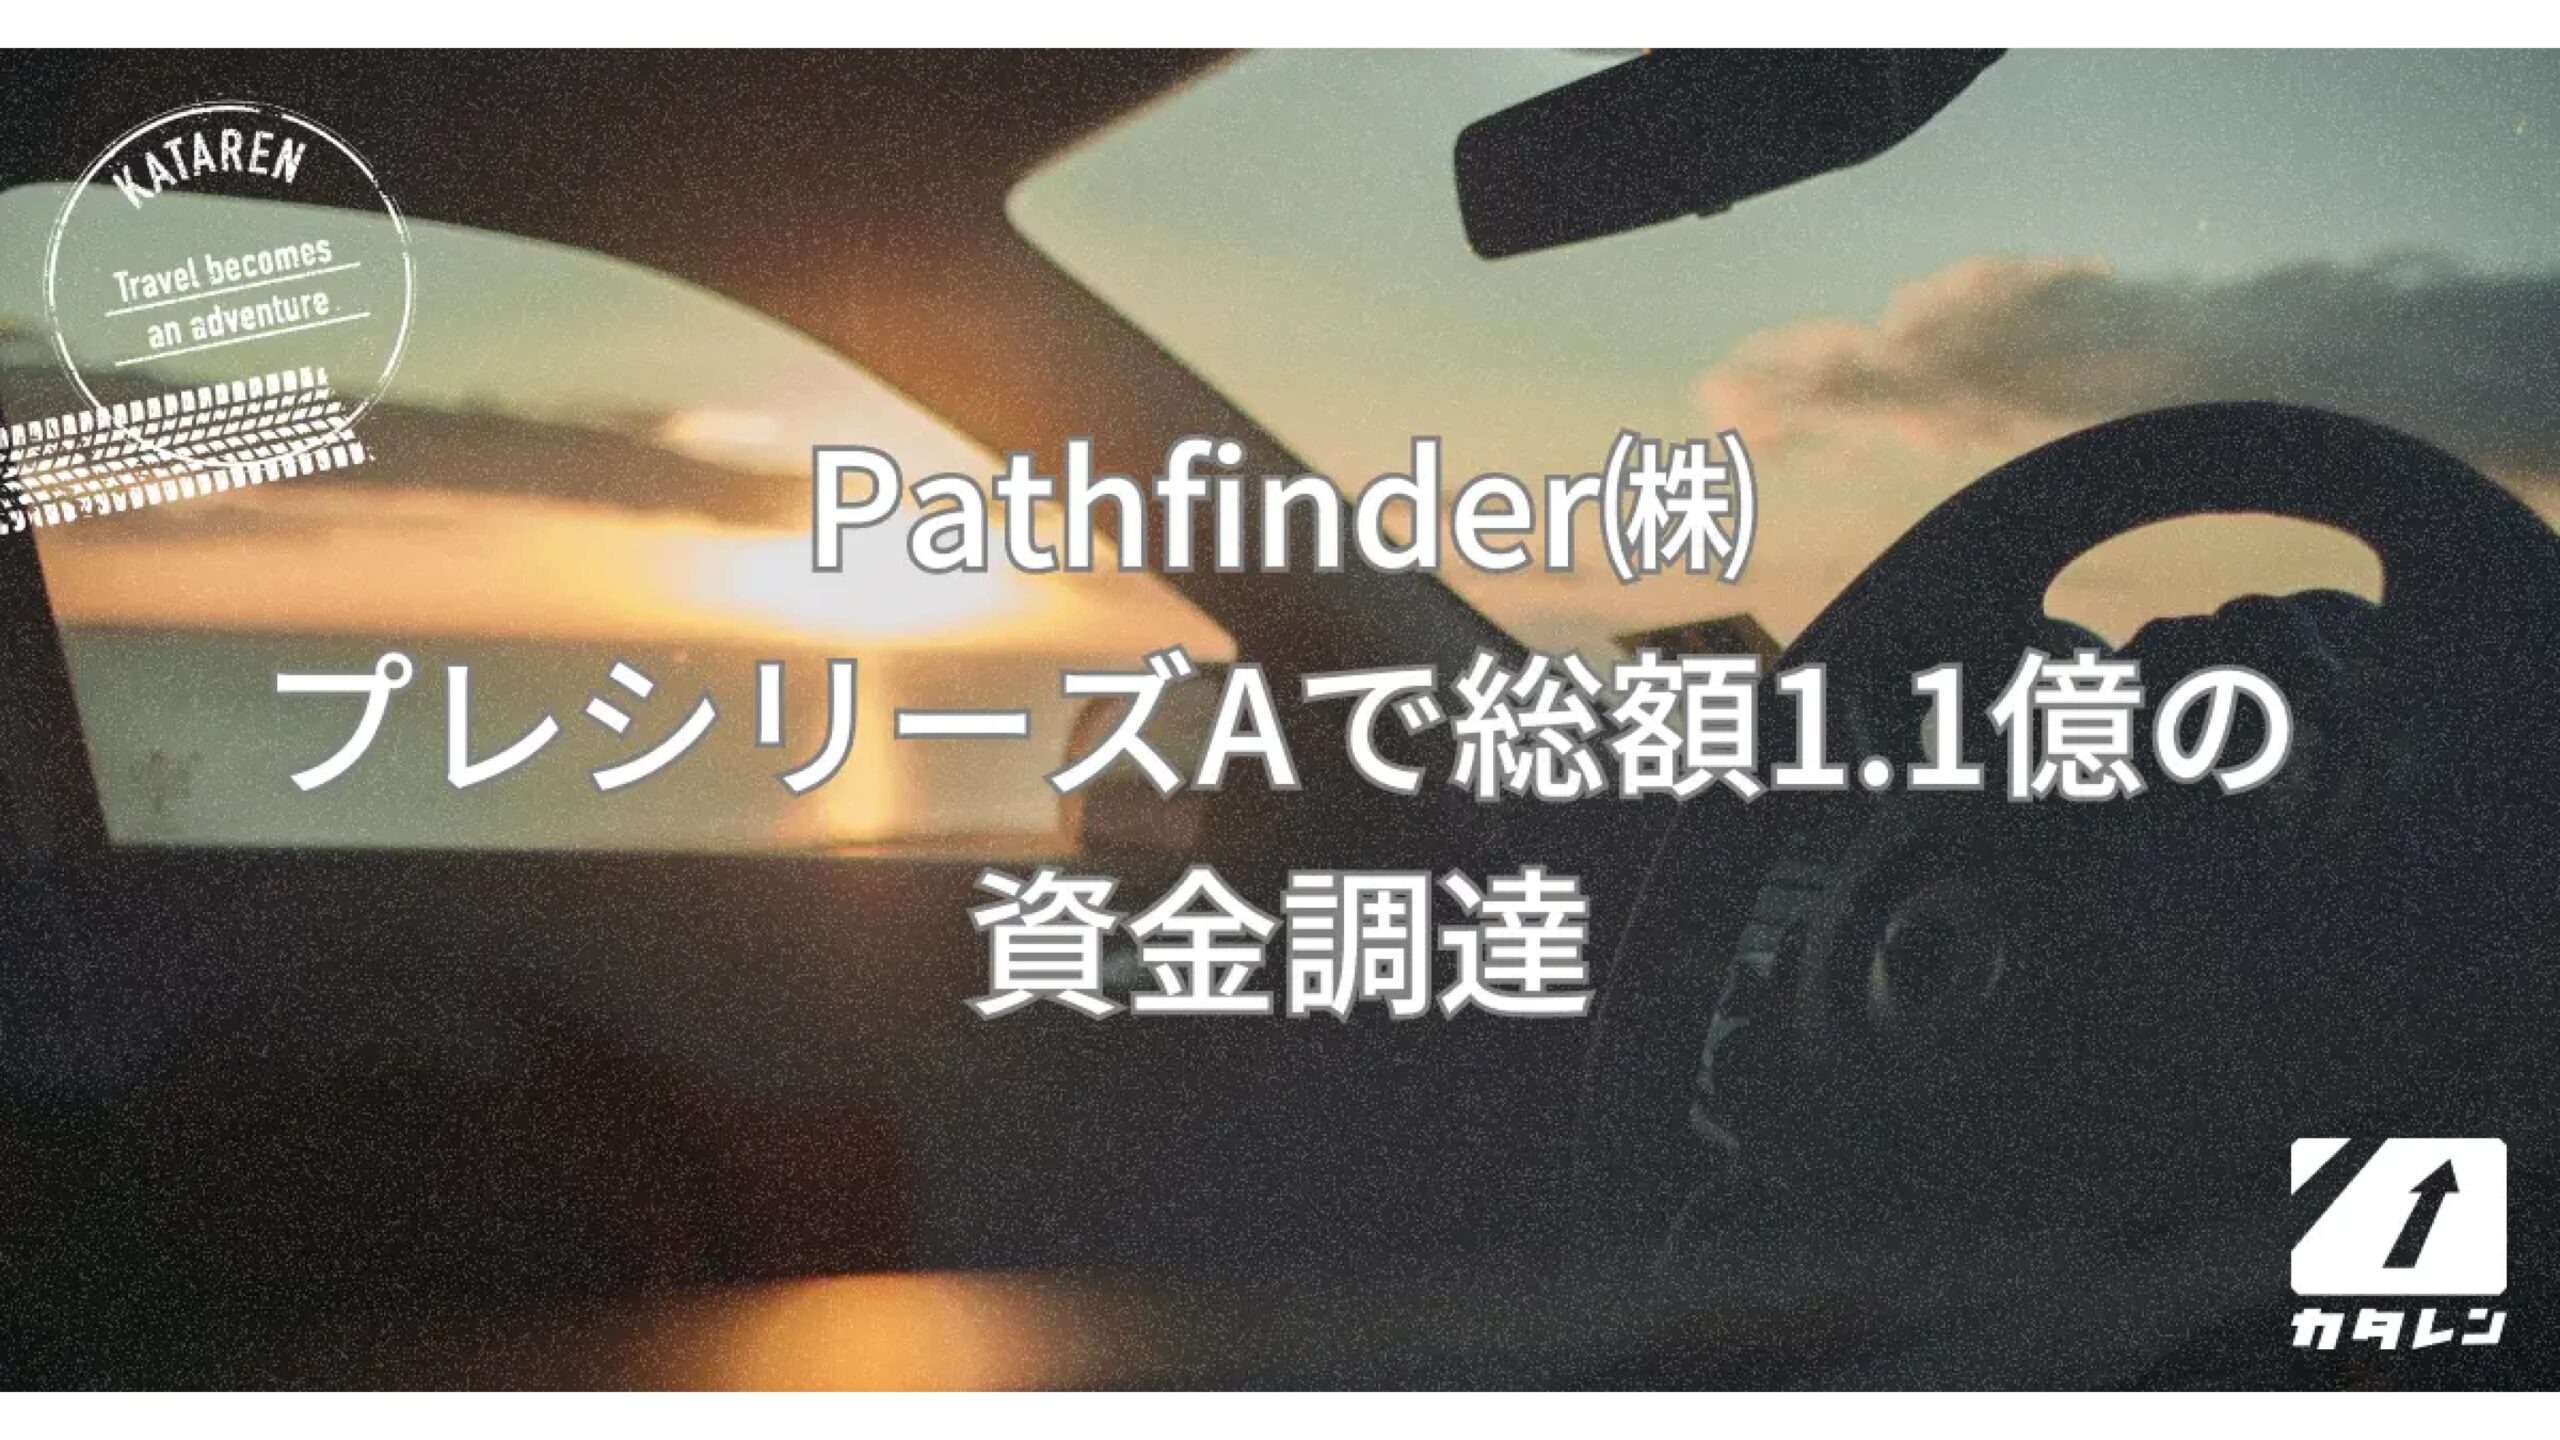 最適配置アルゴリズムを開発・運用するPathfinder株式会社プレシリーズAで1.1億円の資金調達ー累計調達額は1.9億円に